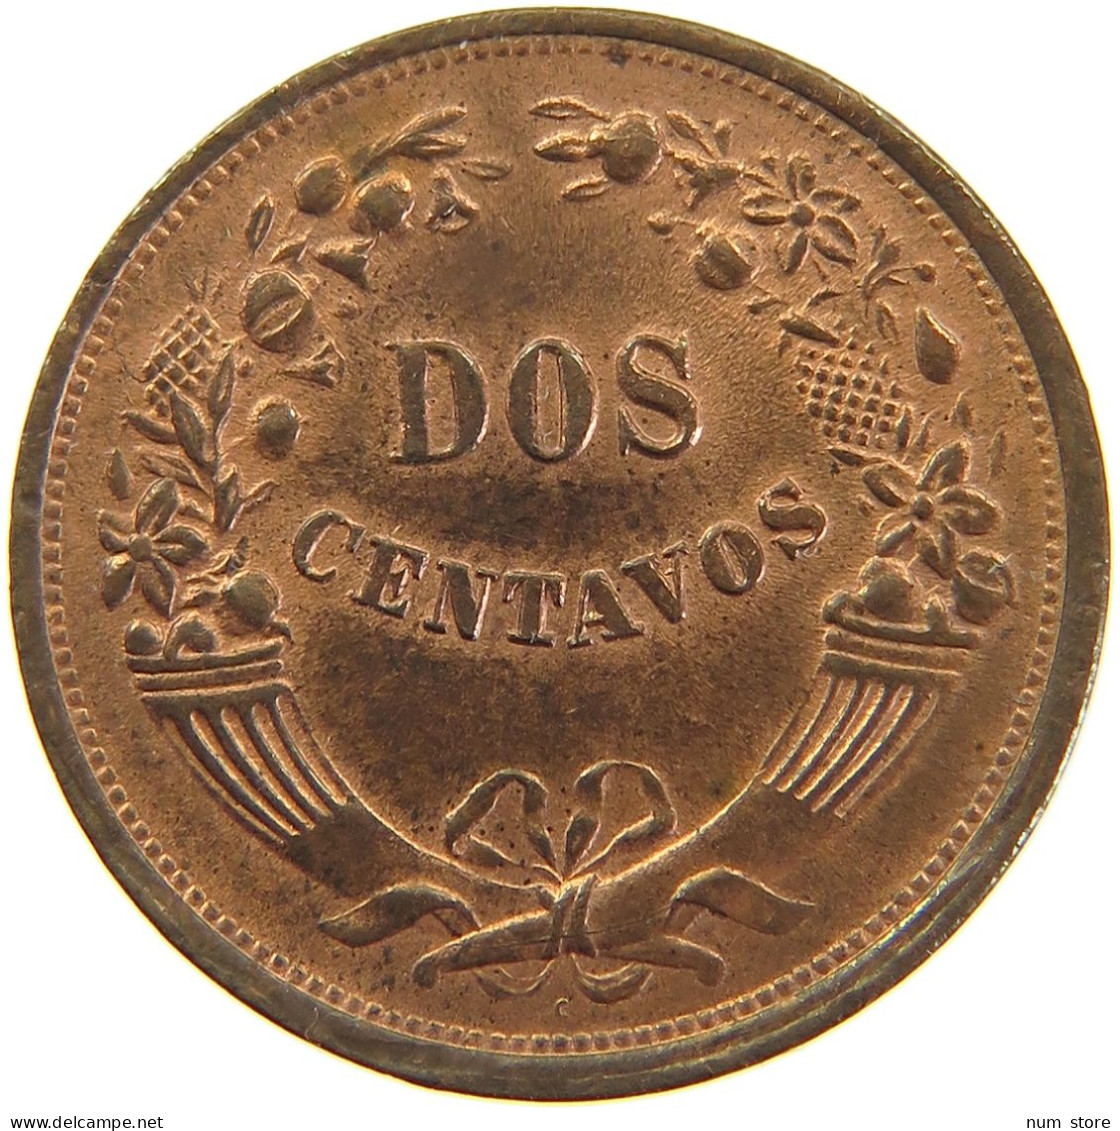 PERU 2 CENTAVOS 1936 C RED LUSTRE #t030 0191 - Peru